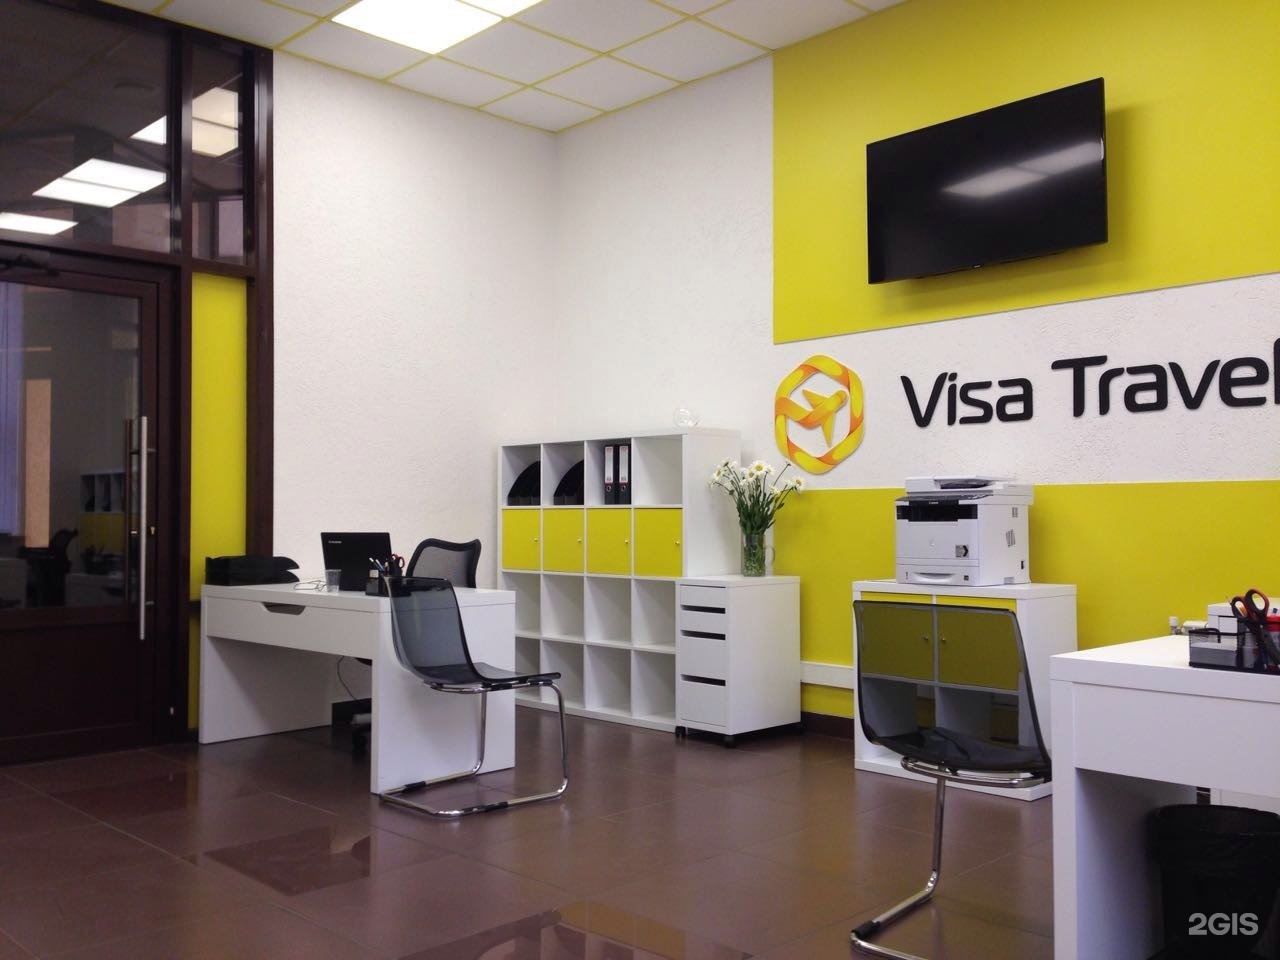 Visa центр. Визовый центр visa Corp. Visa Travel Липецк. Первый визовый центр фото.